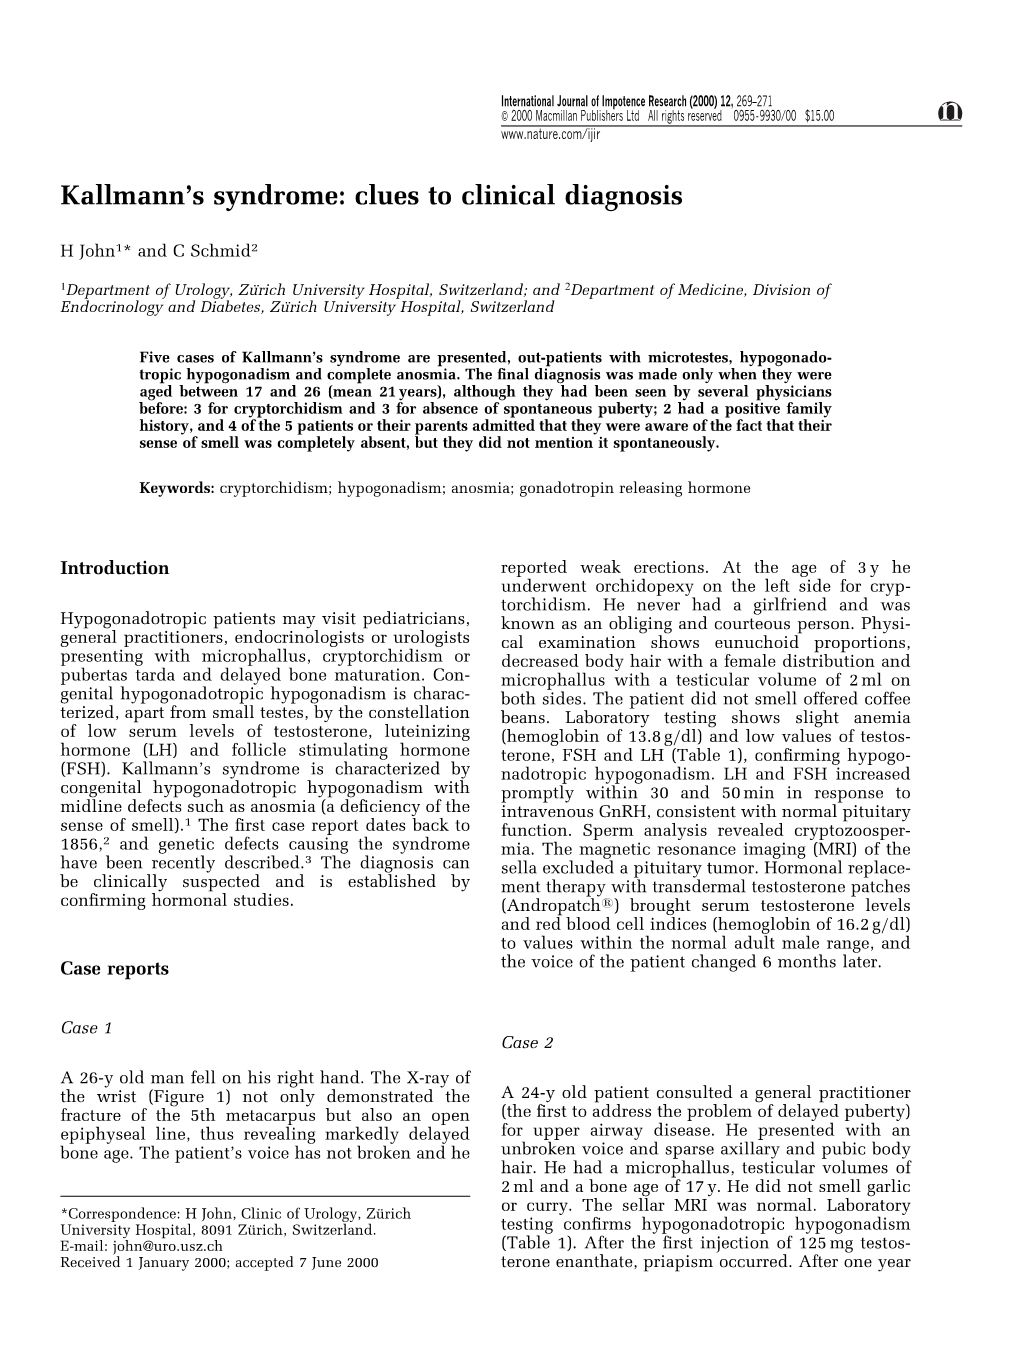 Kallmann's Syndrome: Clues to Clinical Diagnosis